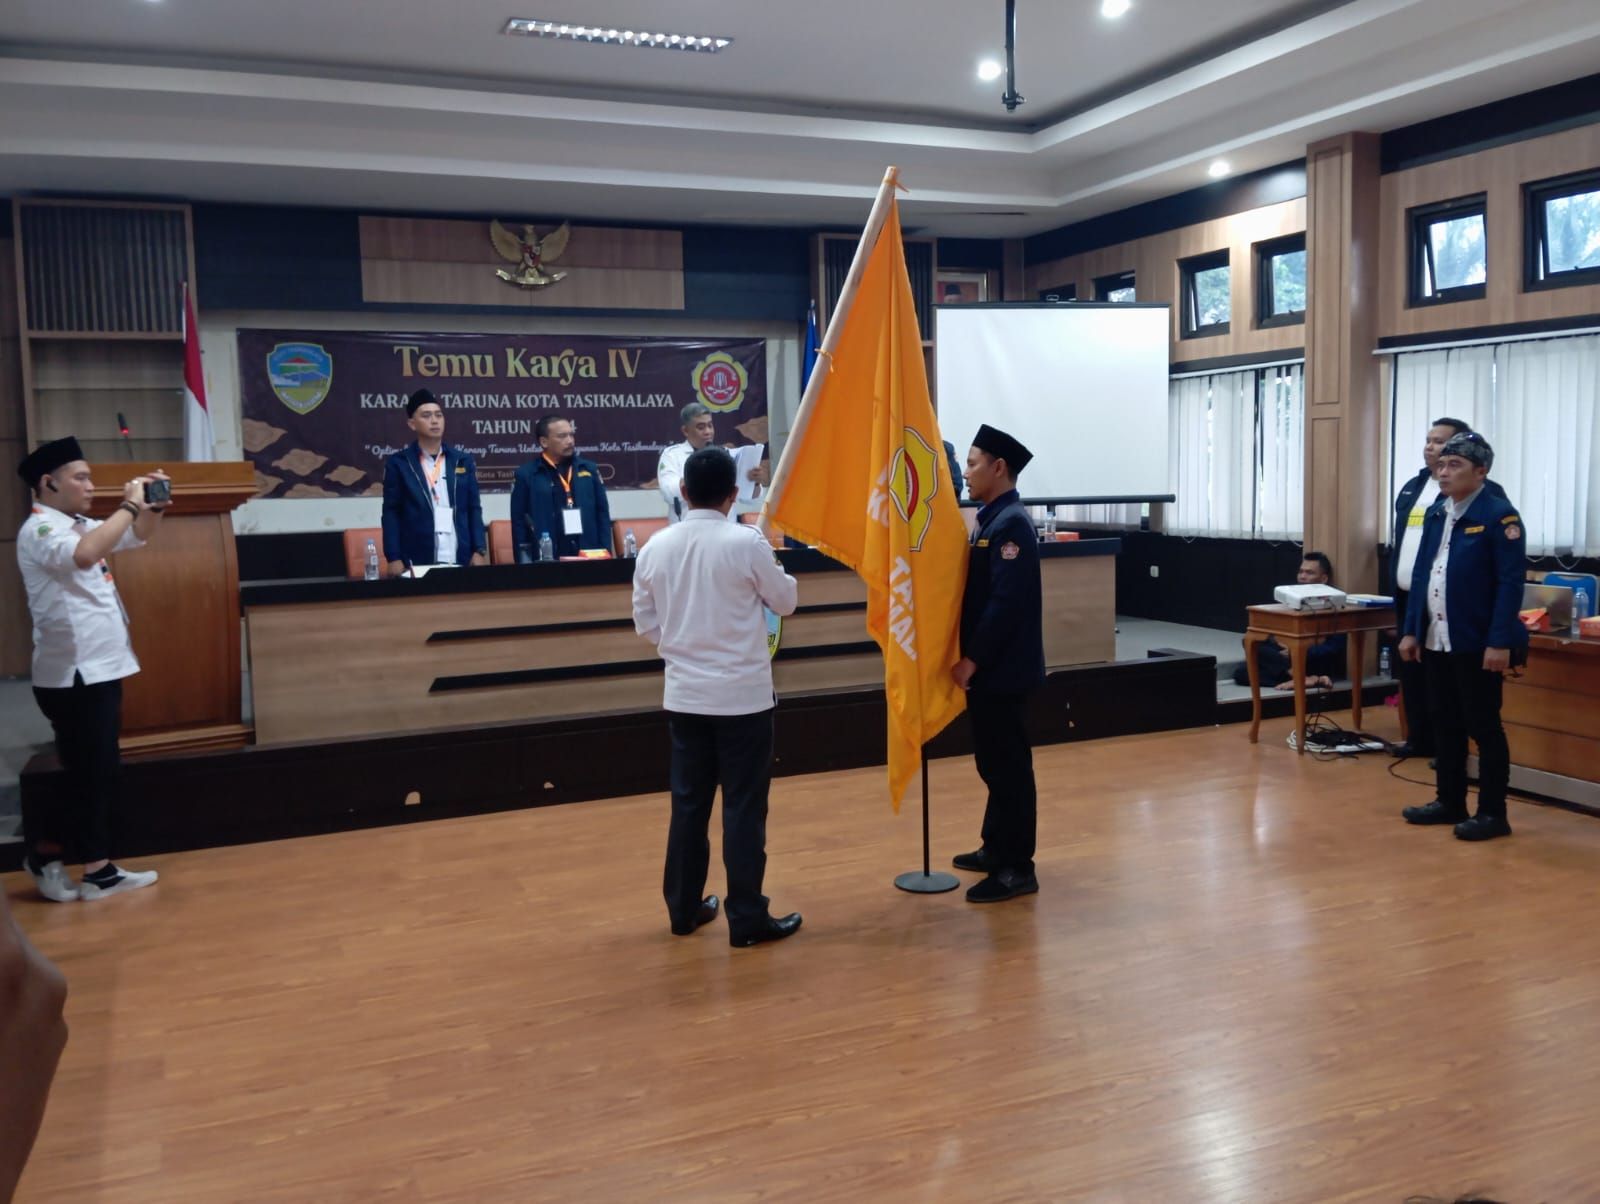 Penyerahan pataka kepada Ketua Karang Taruna Kota Tasikmalaya yang terpilih dalam temu karya